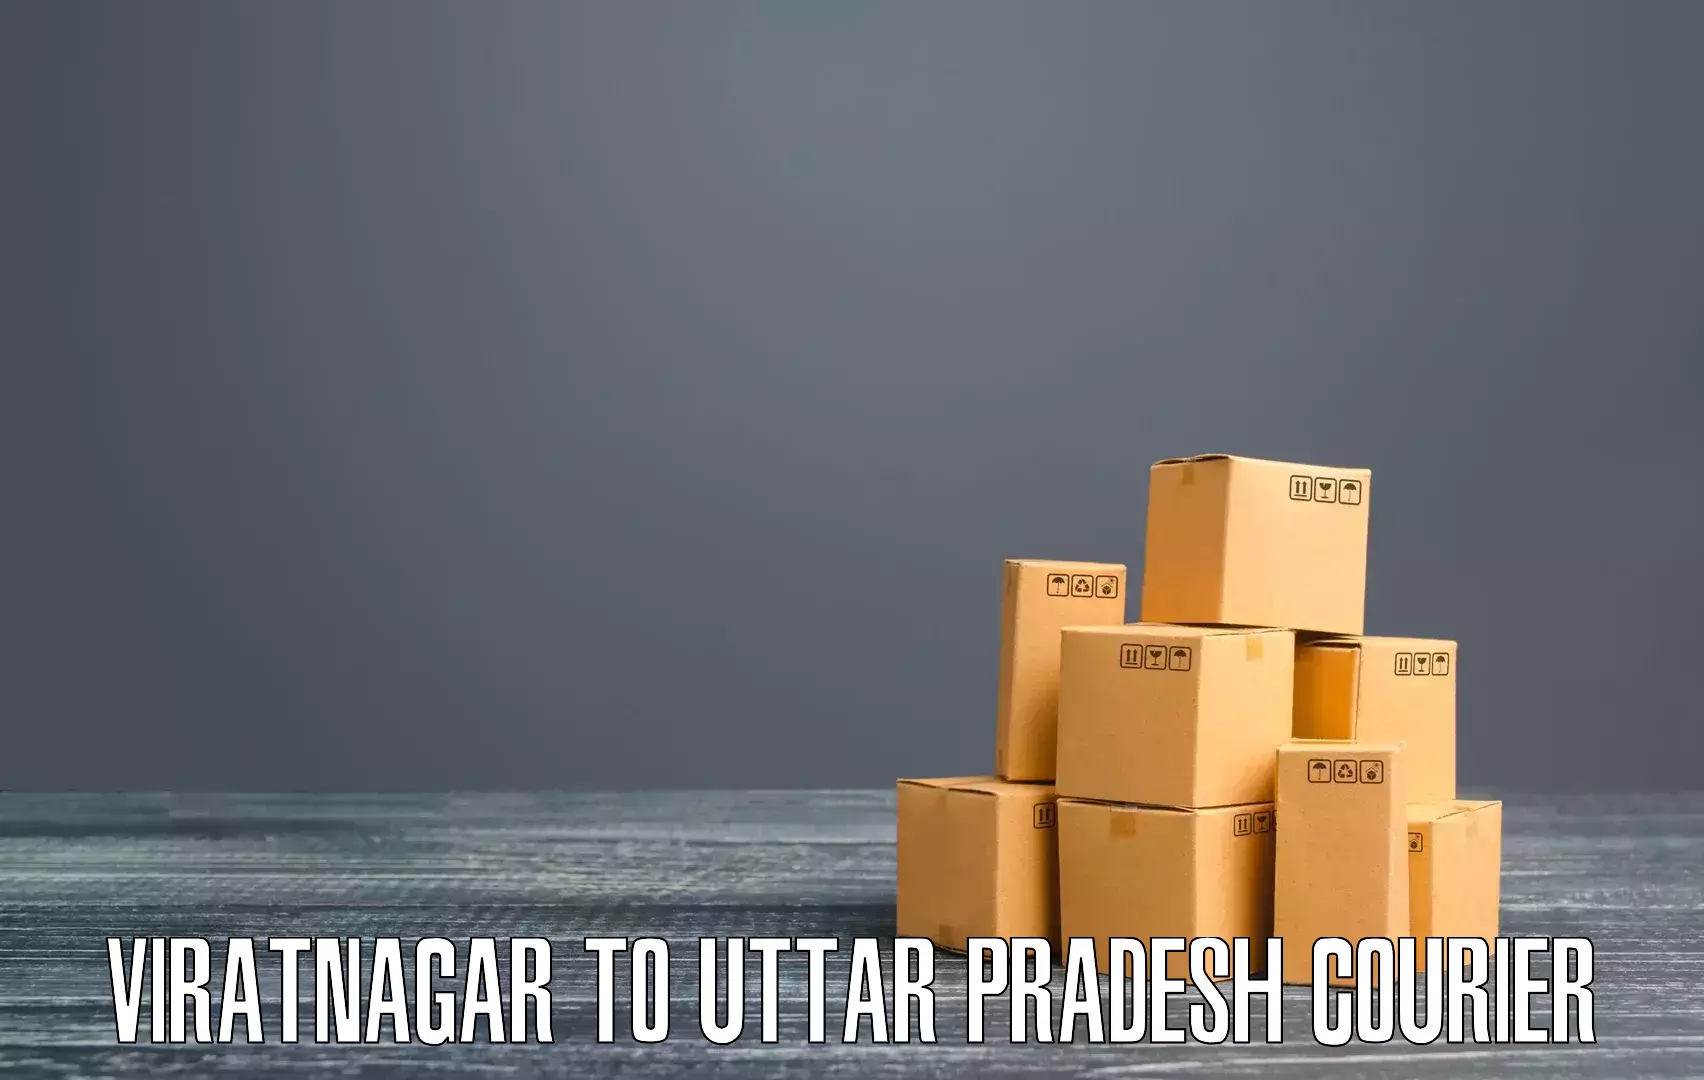 Efficient cargo services Viratnagar to Shahjahanpur